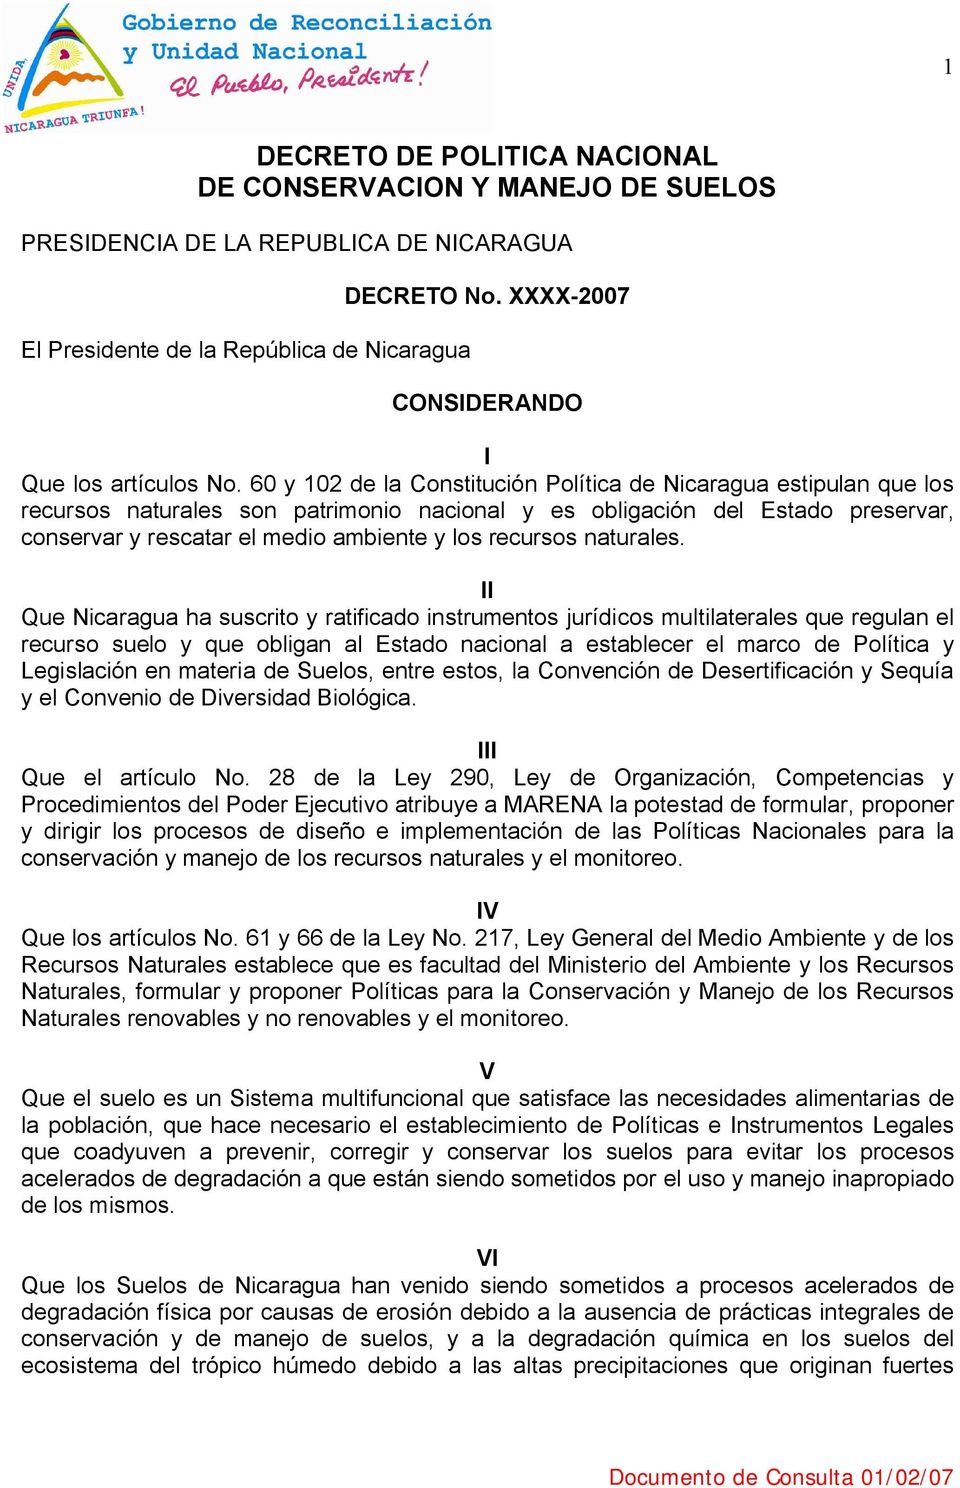 60 y 102 de la Constitución Política de Nicaragua estipulan que los recursos naturales son patrimonio nacional y es obligación del Estado preservar, conservar y rescatar el medio ambiente y los